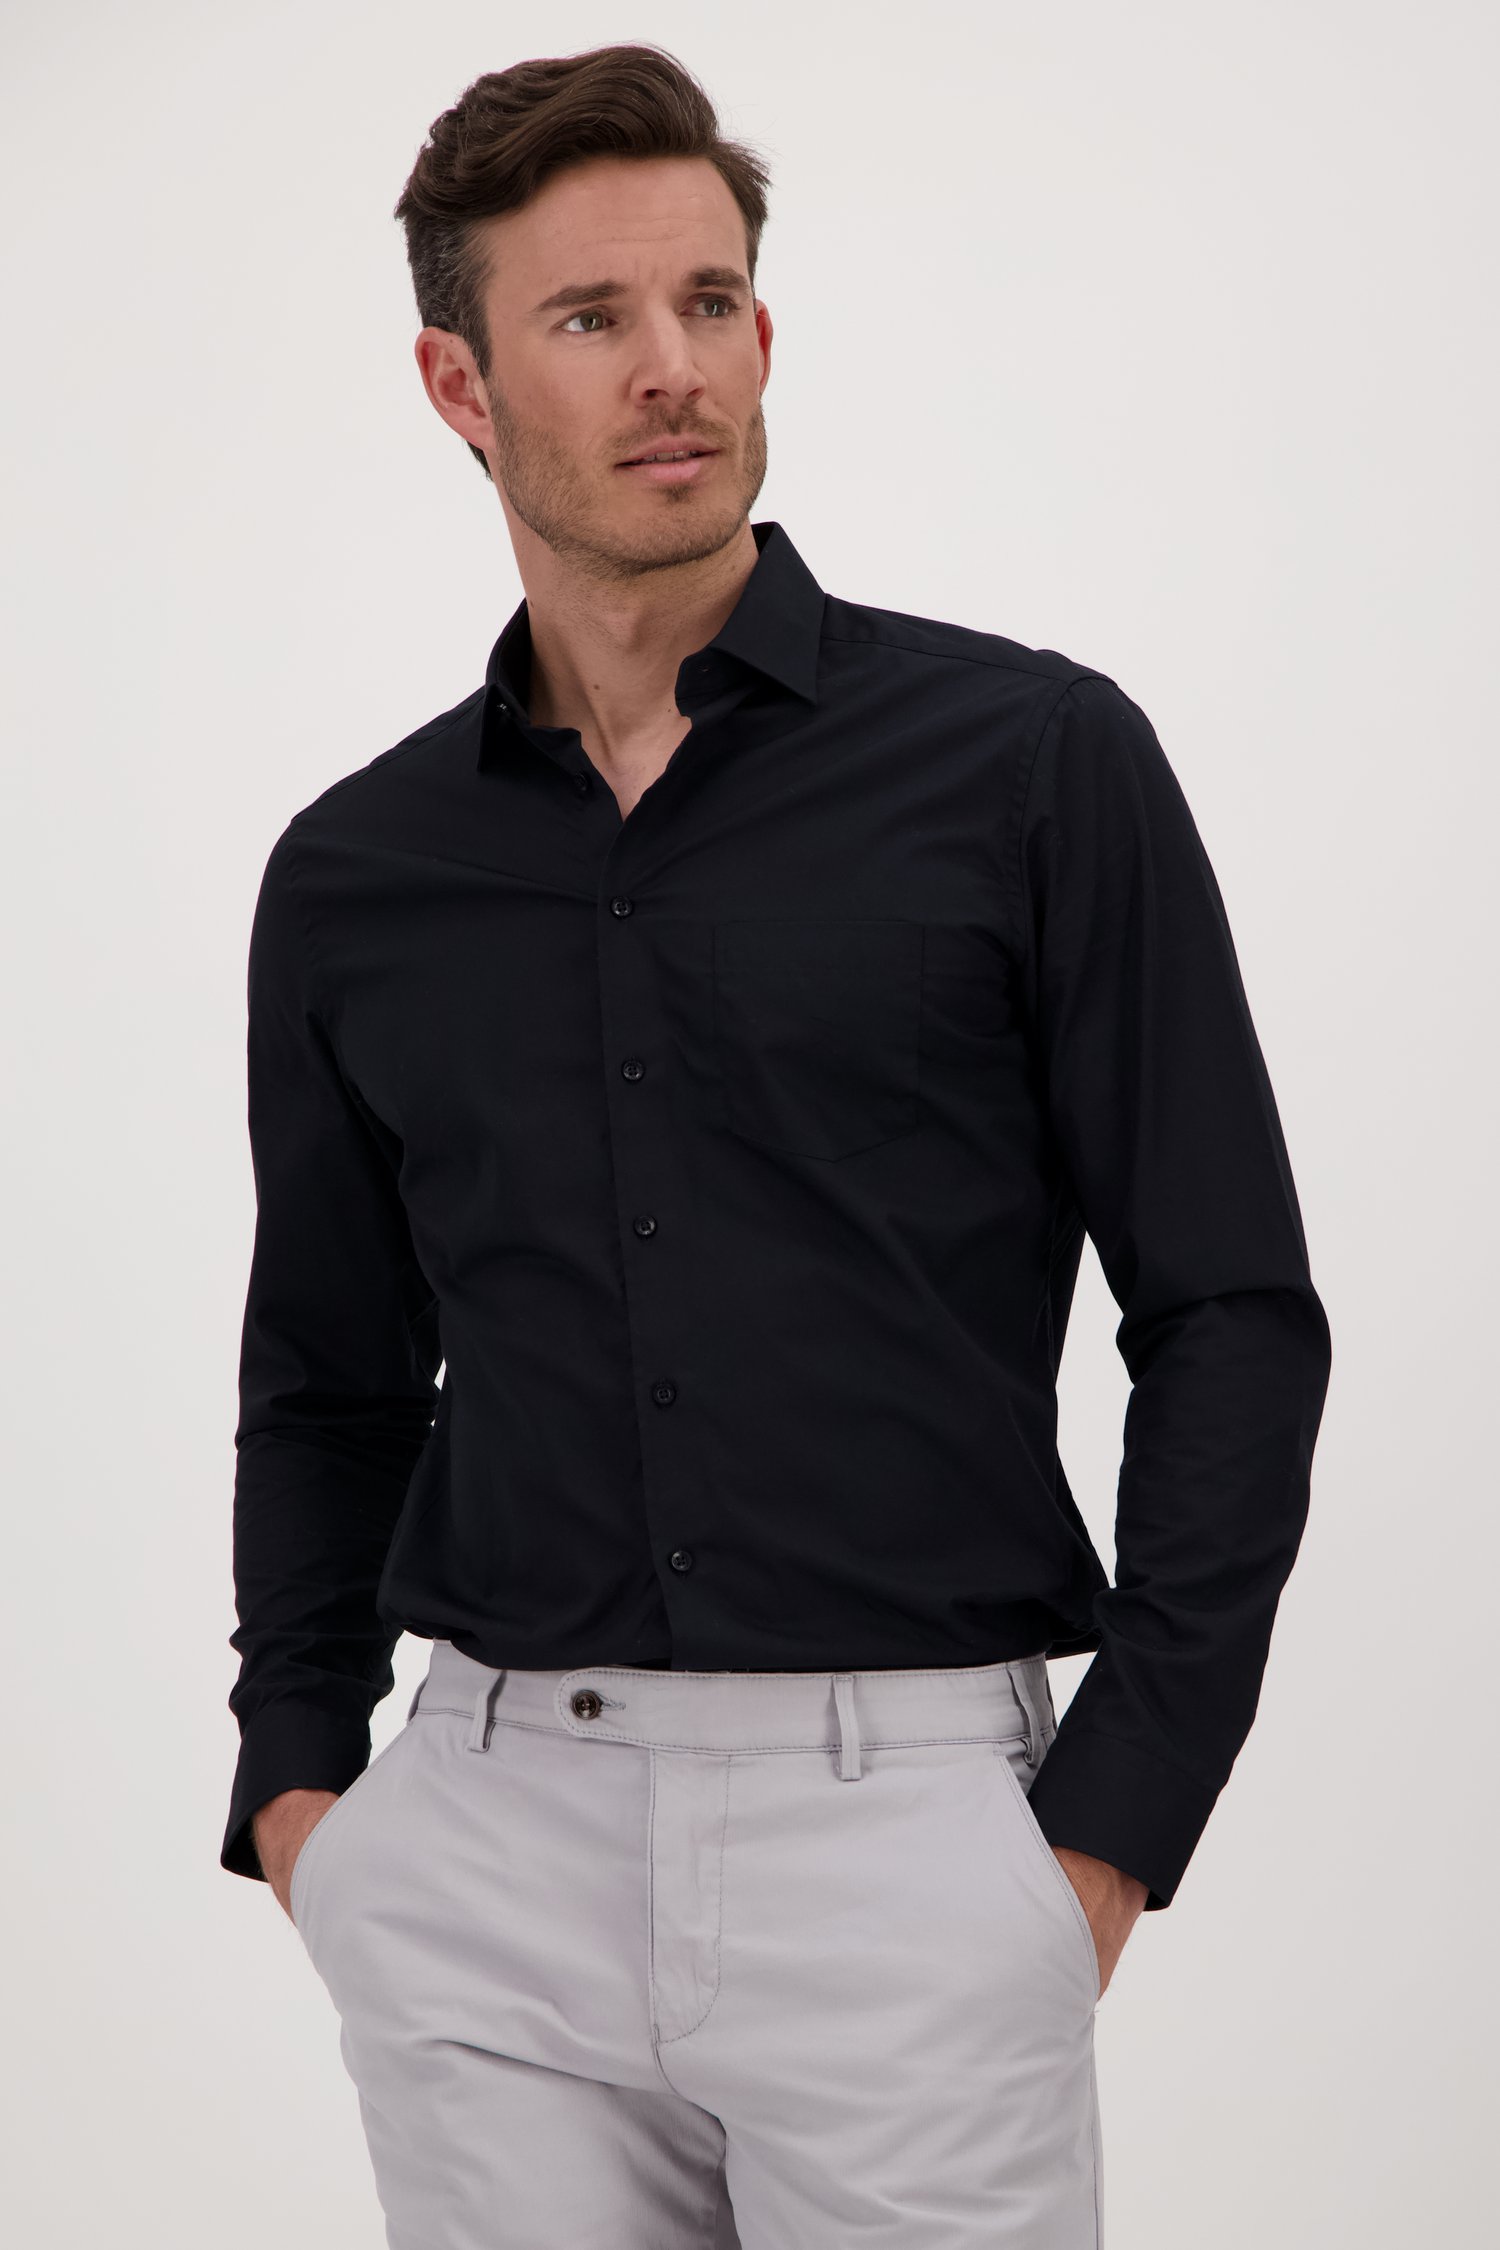 Zwart hemd - regular fit van Dansaert Black voor Heren